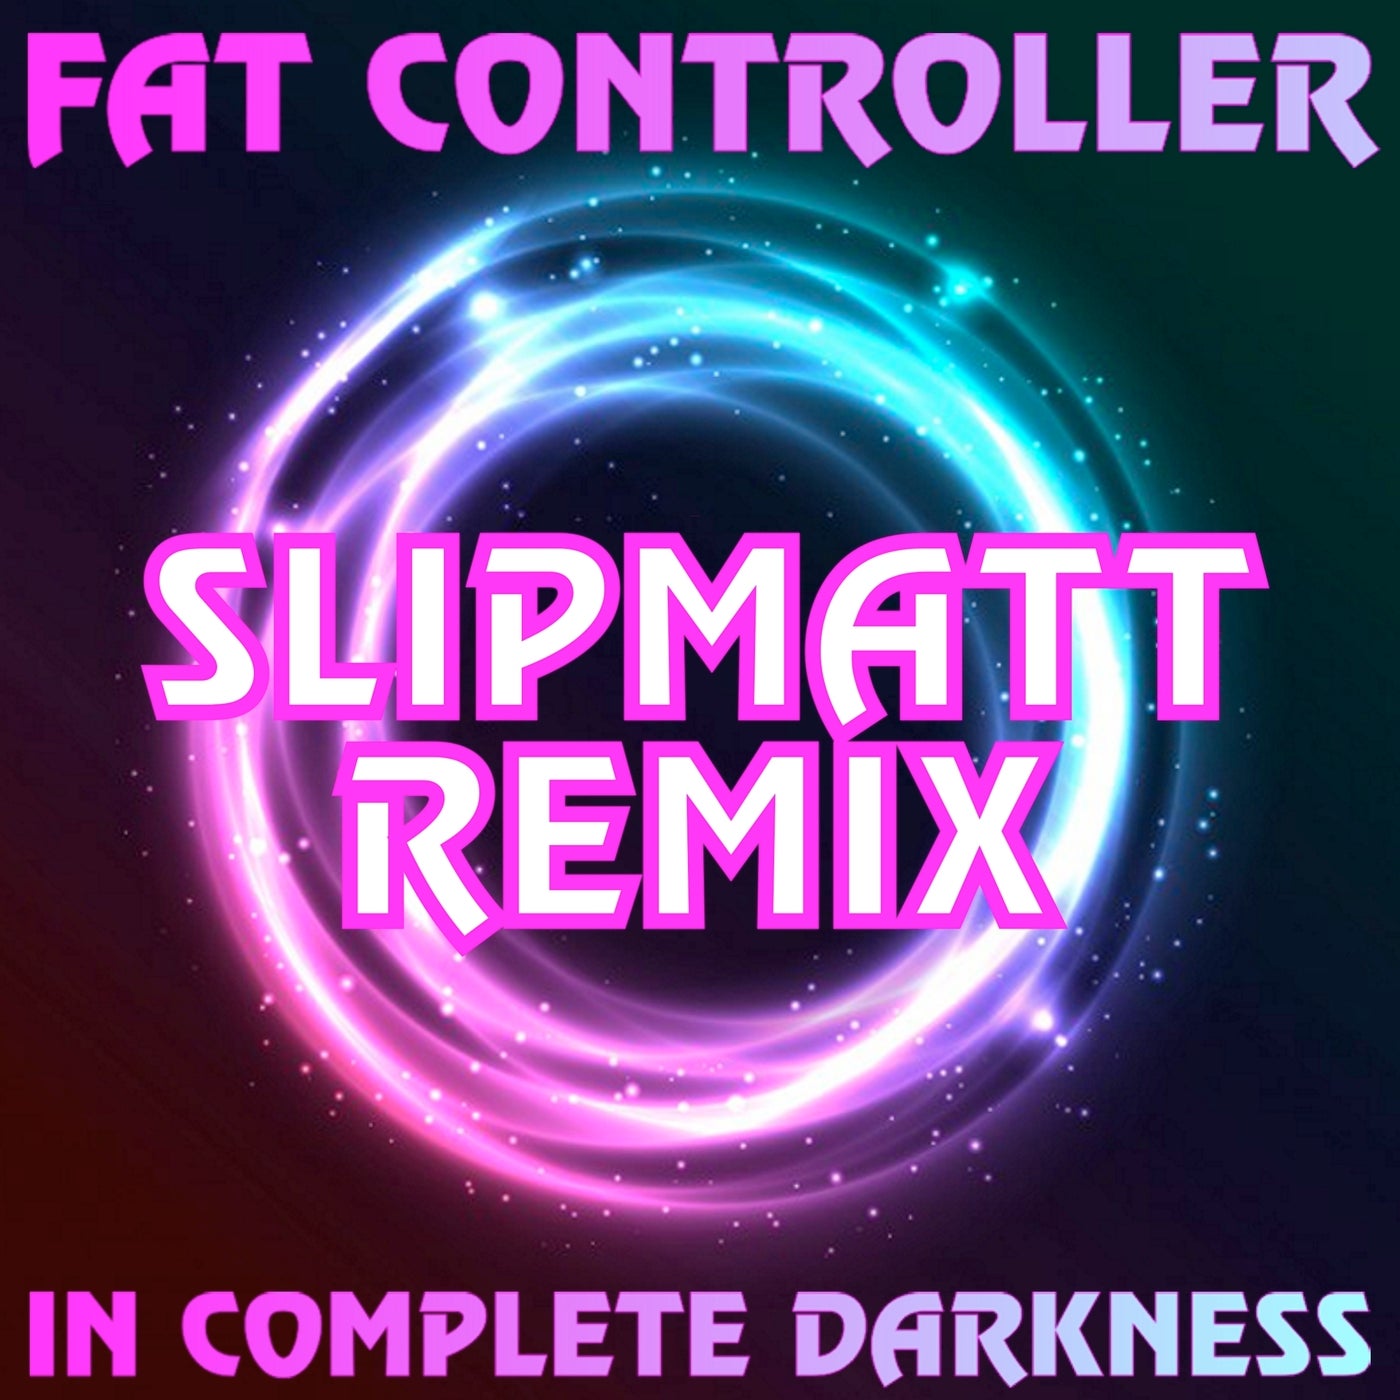 In Complete Darkness (Slipmatt Remix)